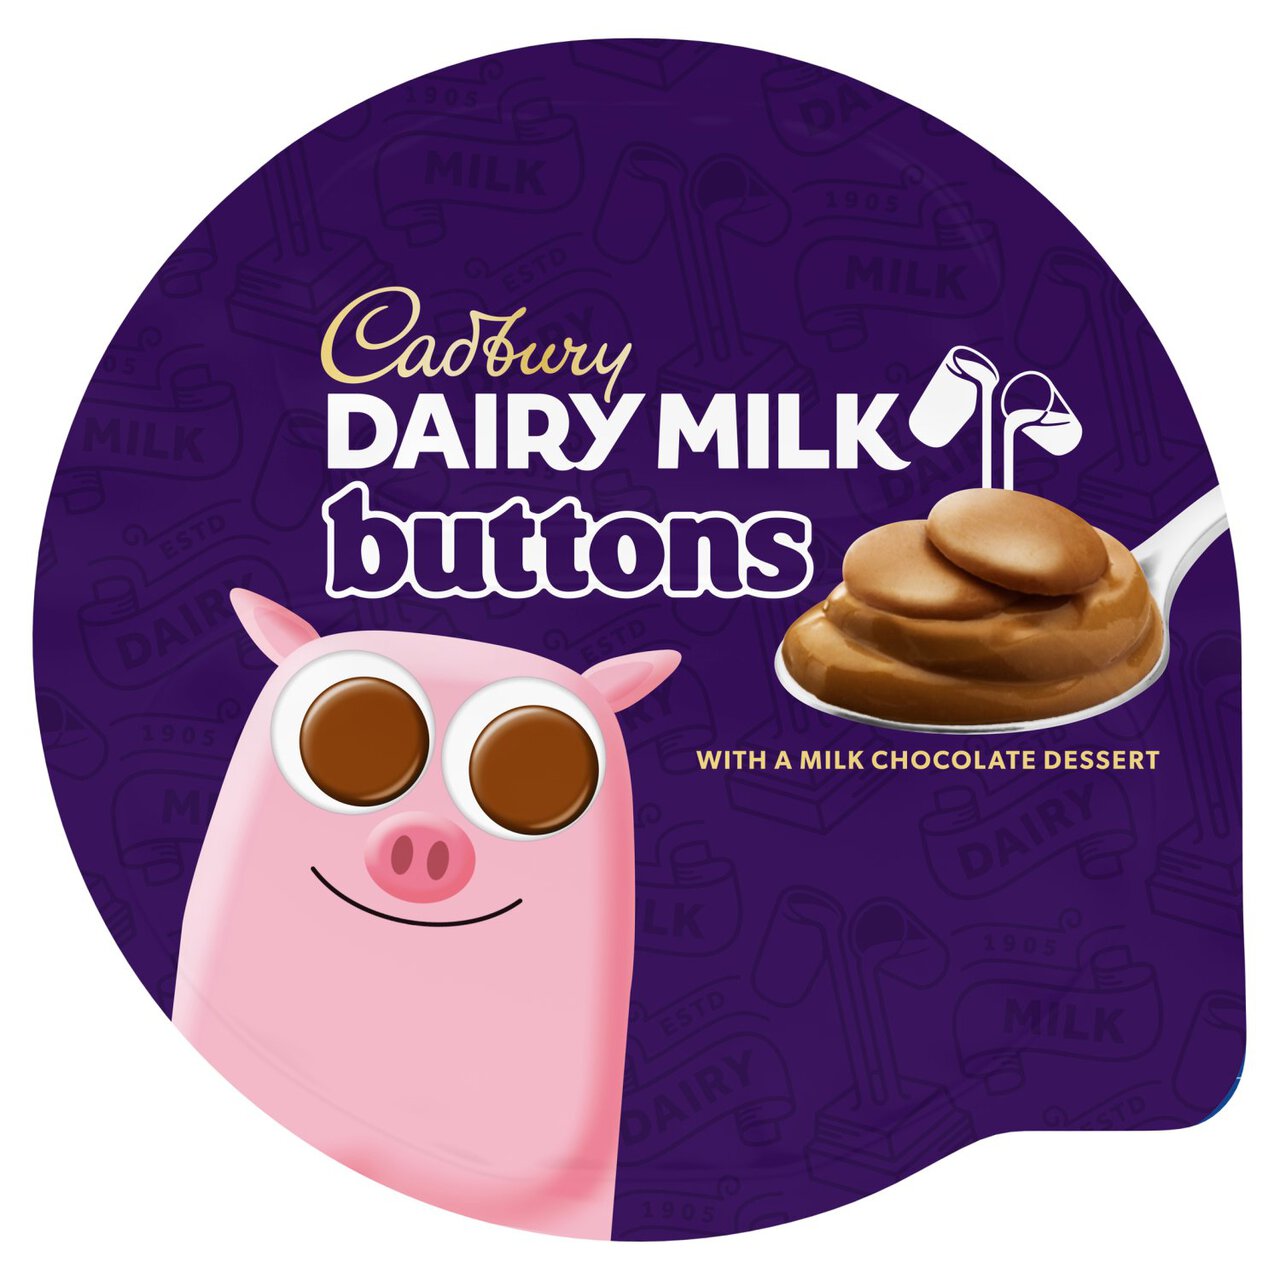 Cadbury Dairy Milk Buttons Dessert 75g